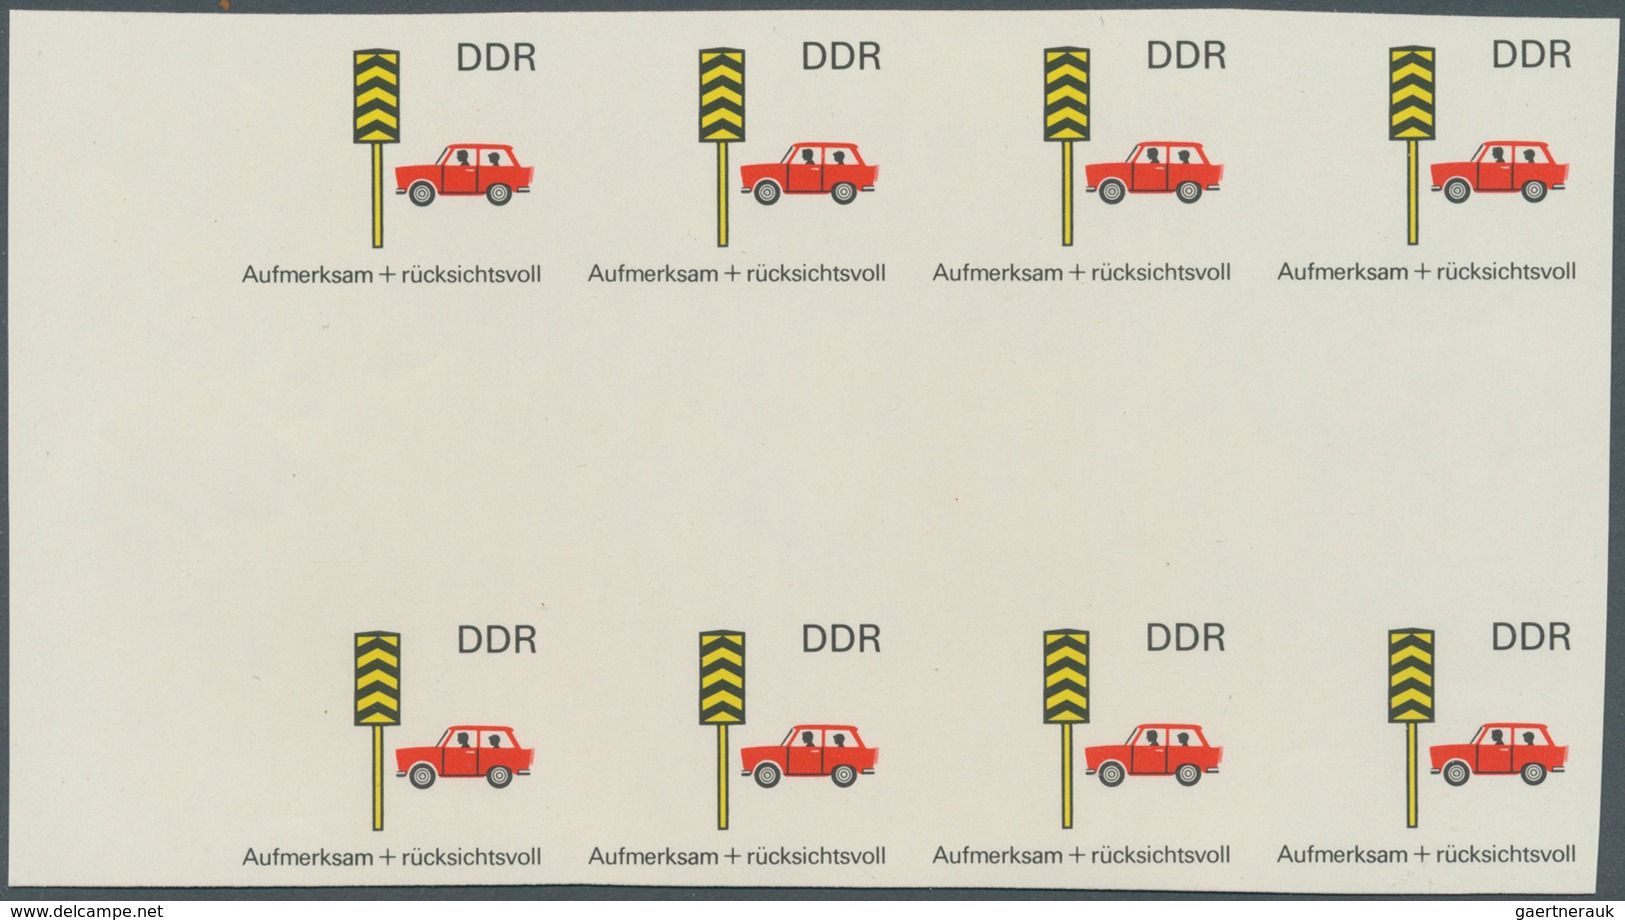 DDR: 1969, Sicherheit im Straßenverkehr 5 Pf. 'Rücksichtnahme auf Fußgänger' in 6 verschiedenen unge